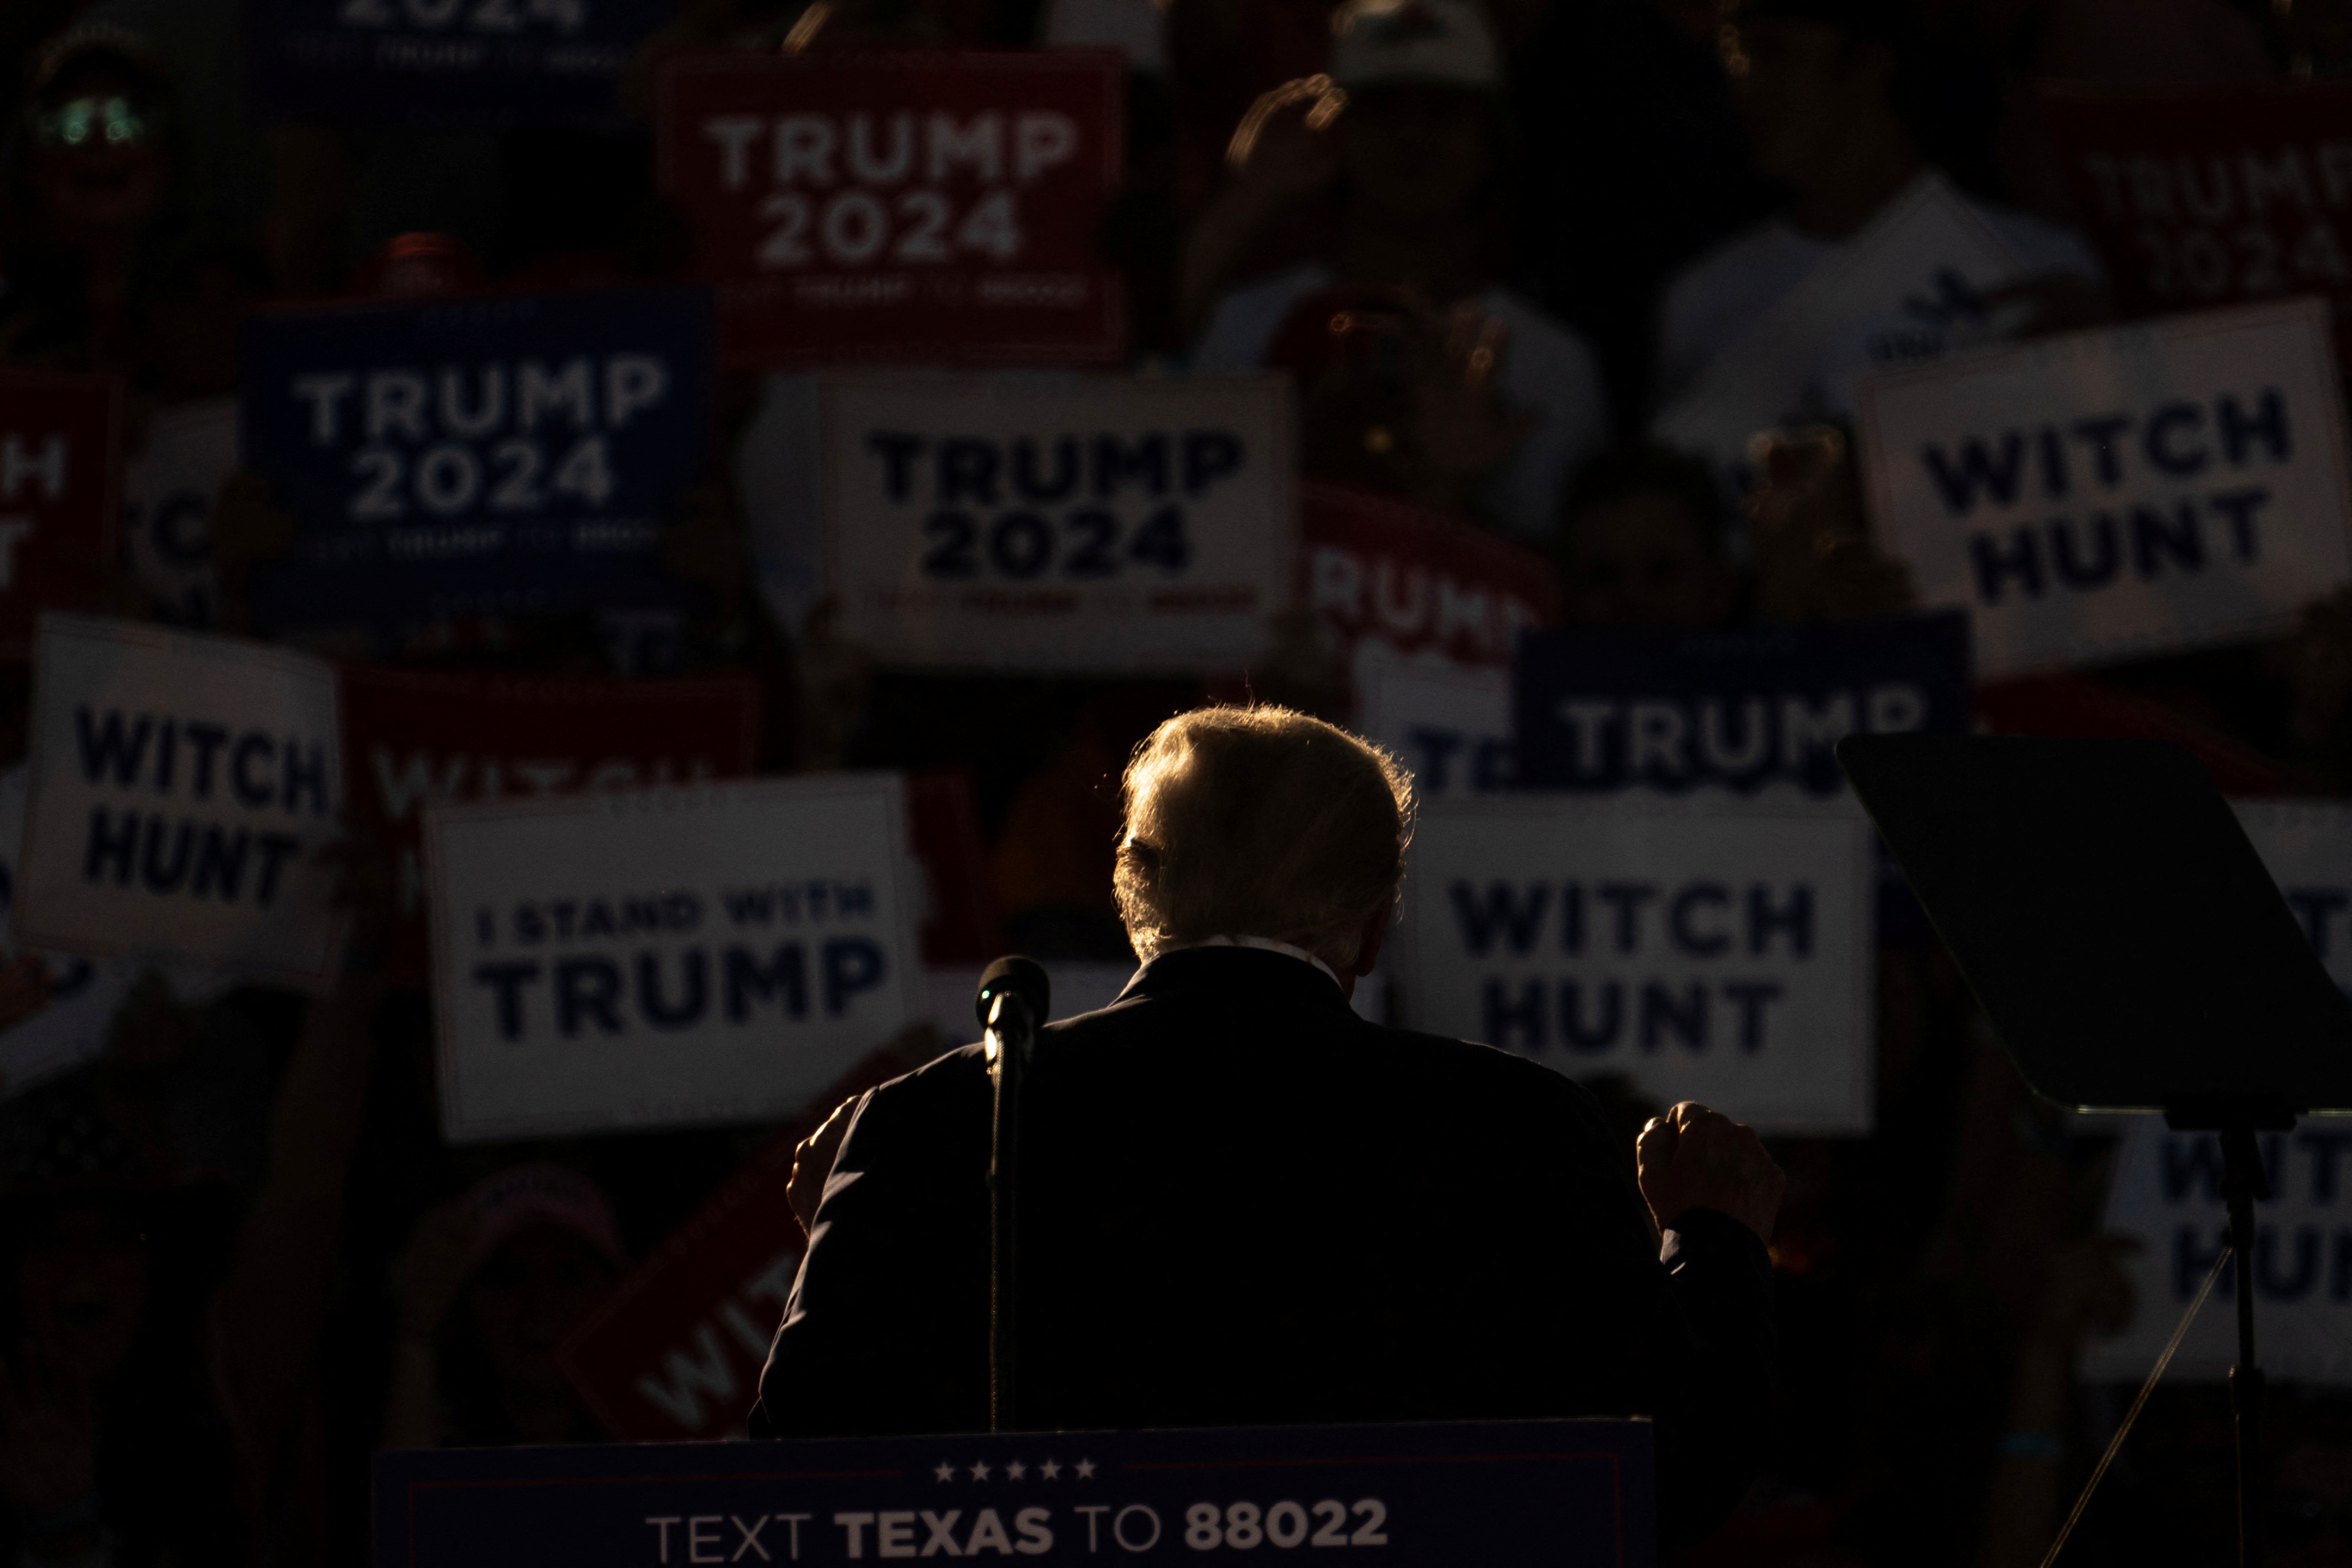 El ex presidente de los Estados Unidos, Donald Trump, hace un gesto mientras asiste a su primer mitin de campaña después de anunciar su candidatura a la presidencia en las elecciones de 2024 en un evento en Waco, Texas, EE.UU., el 25 de marzo de 2023 (REUTERS/Go Nakamura)